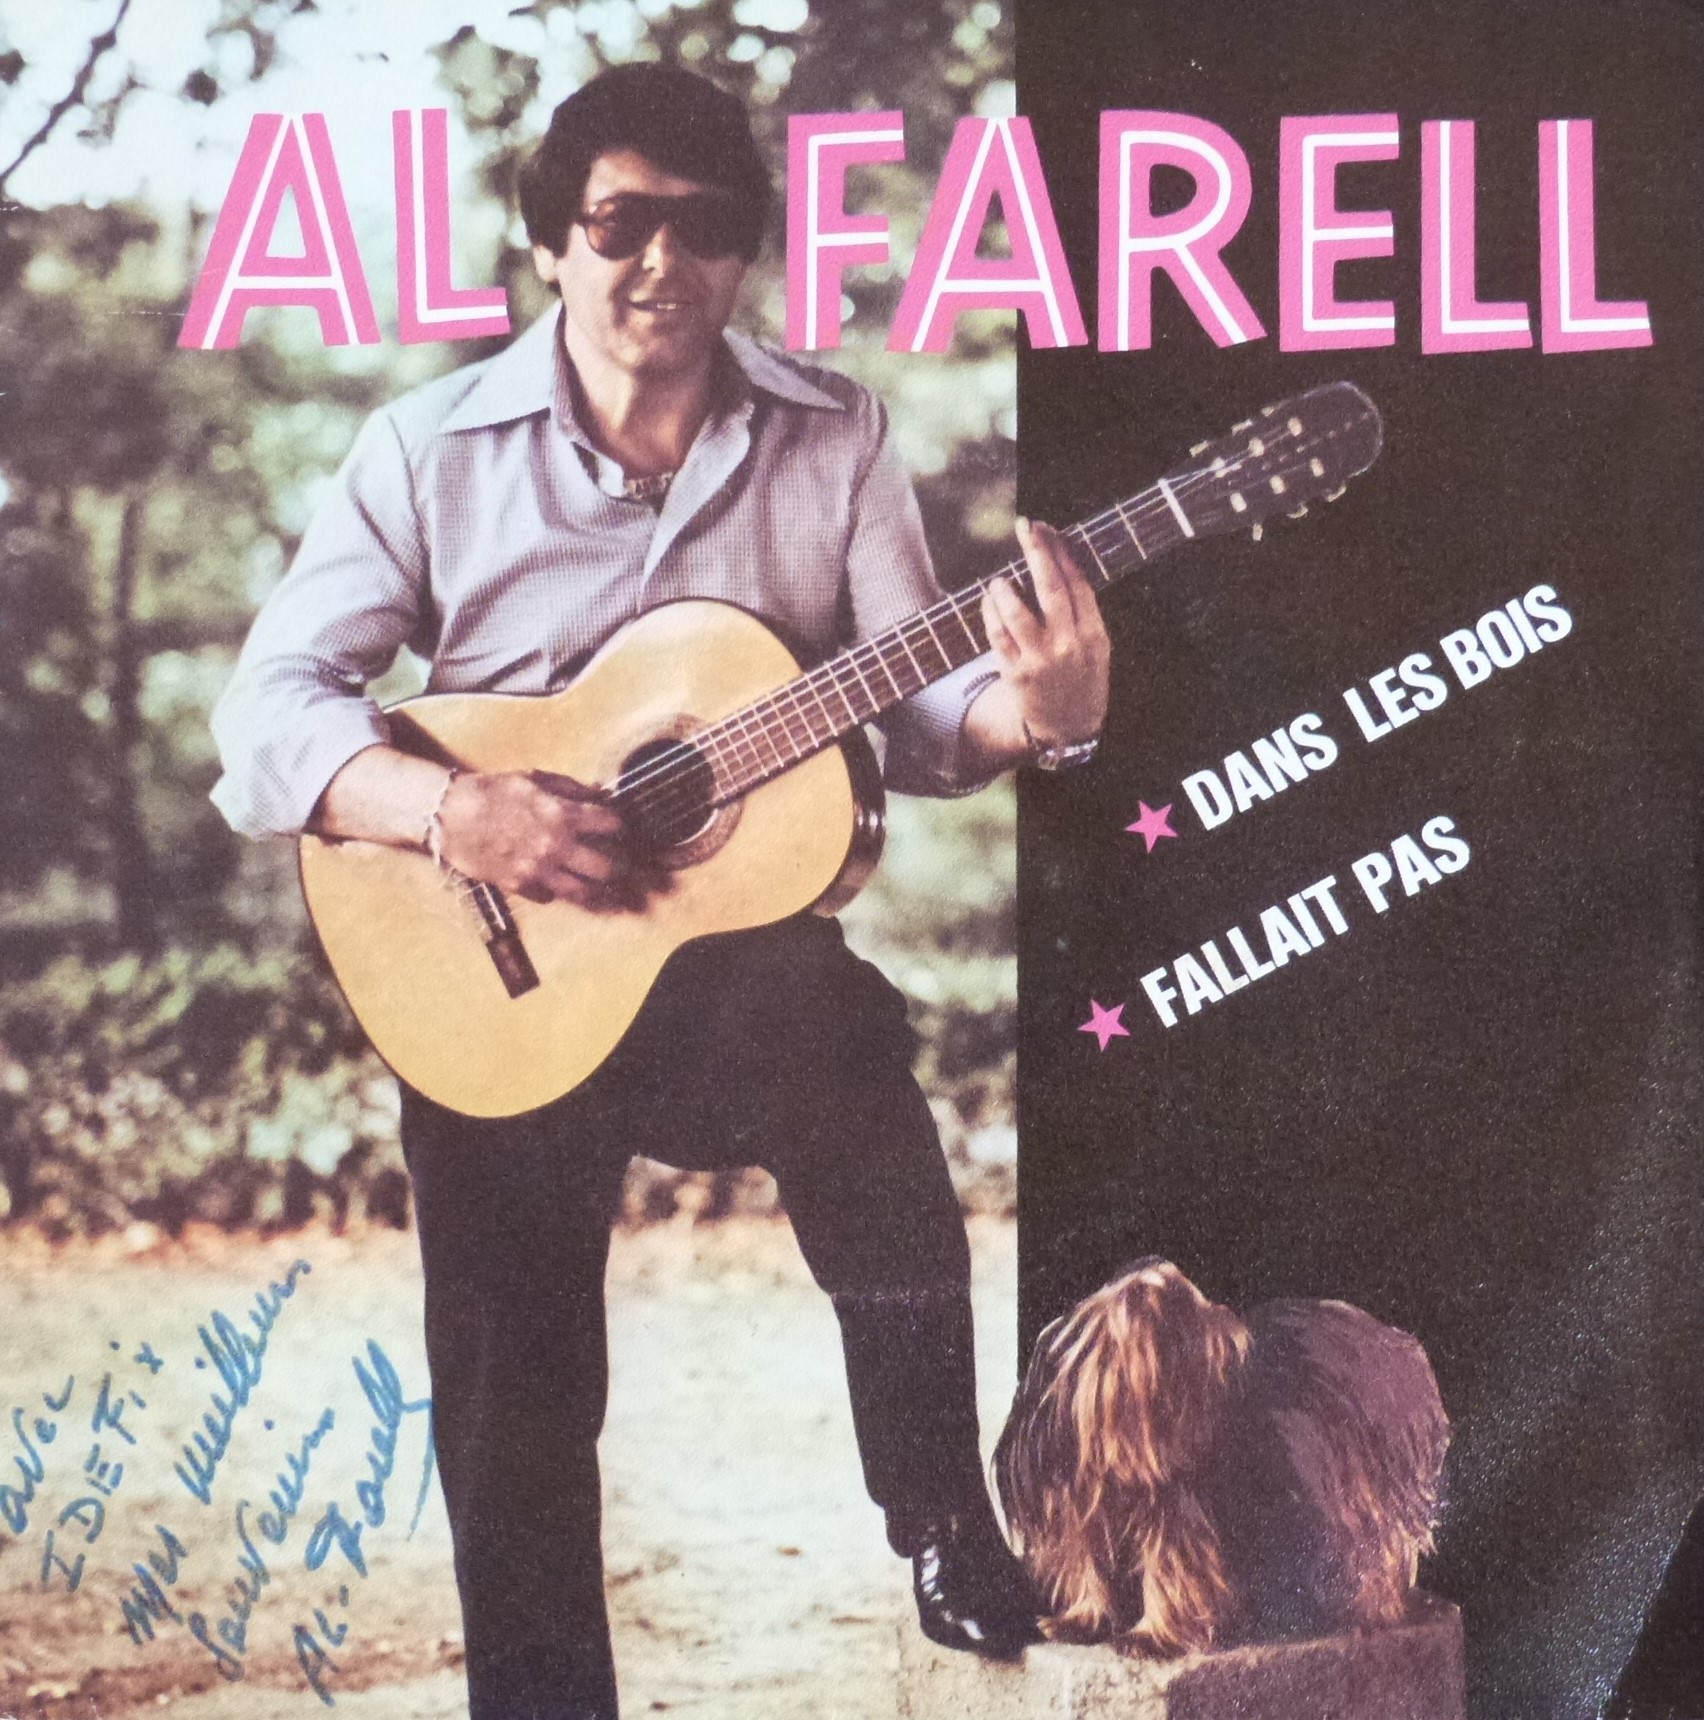 Al Farell